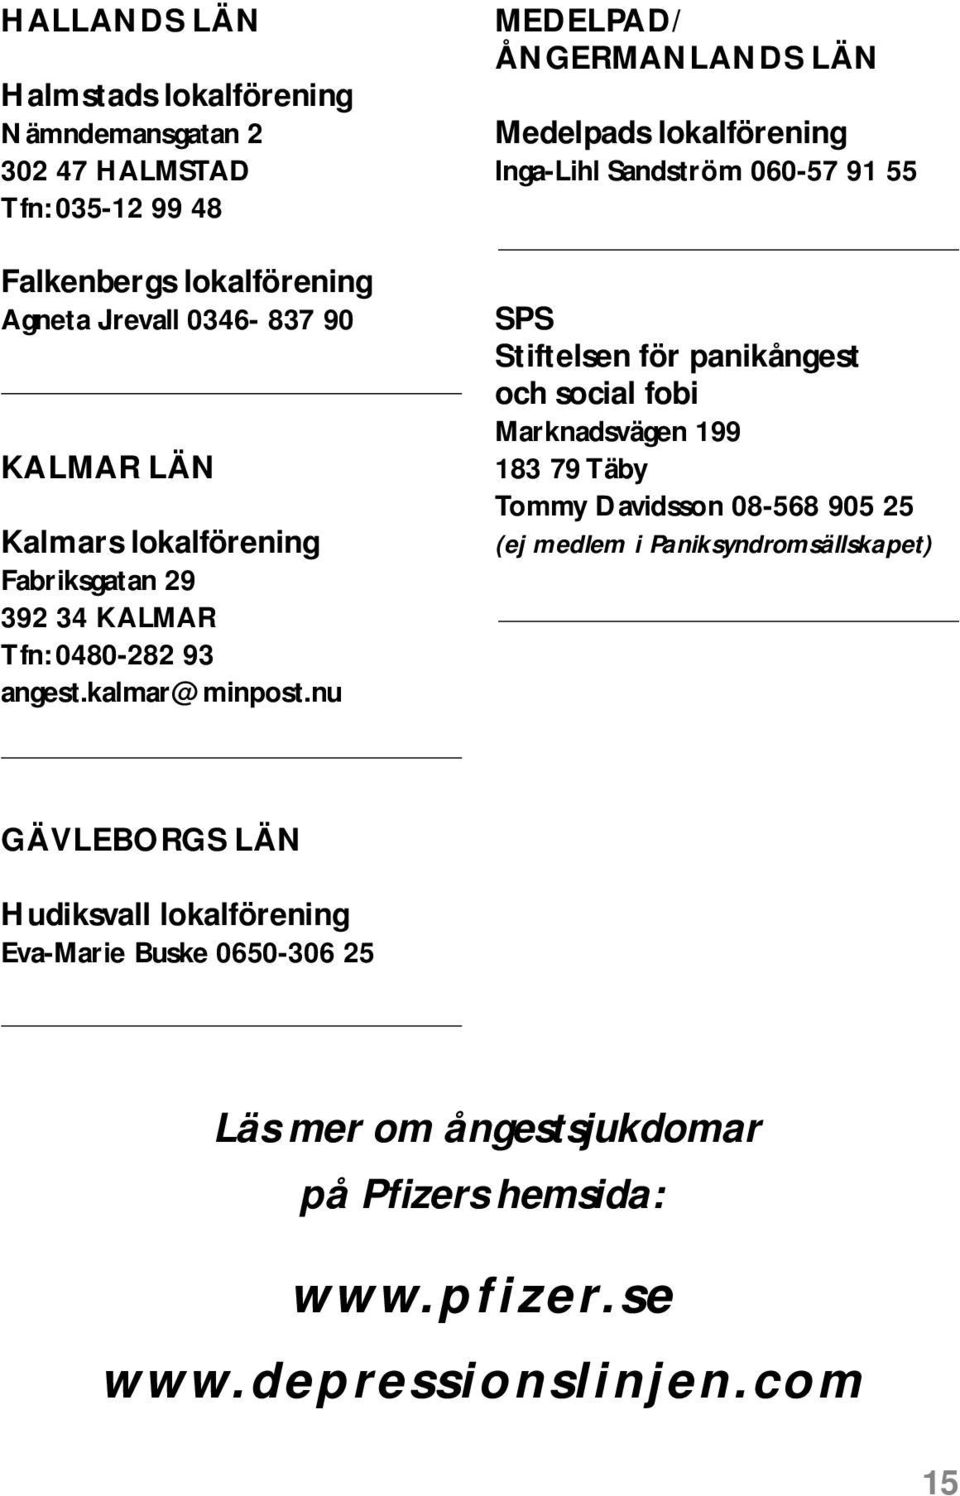 nu MEDELPAD/ ÅNGERMANLANDS LÄN Medelpads lokalförening Inga-Lihl Sandström 060-57 91 55 SPS Stiftelsen för panikångest och social fobi Marknadsvägen 199 183